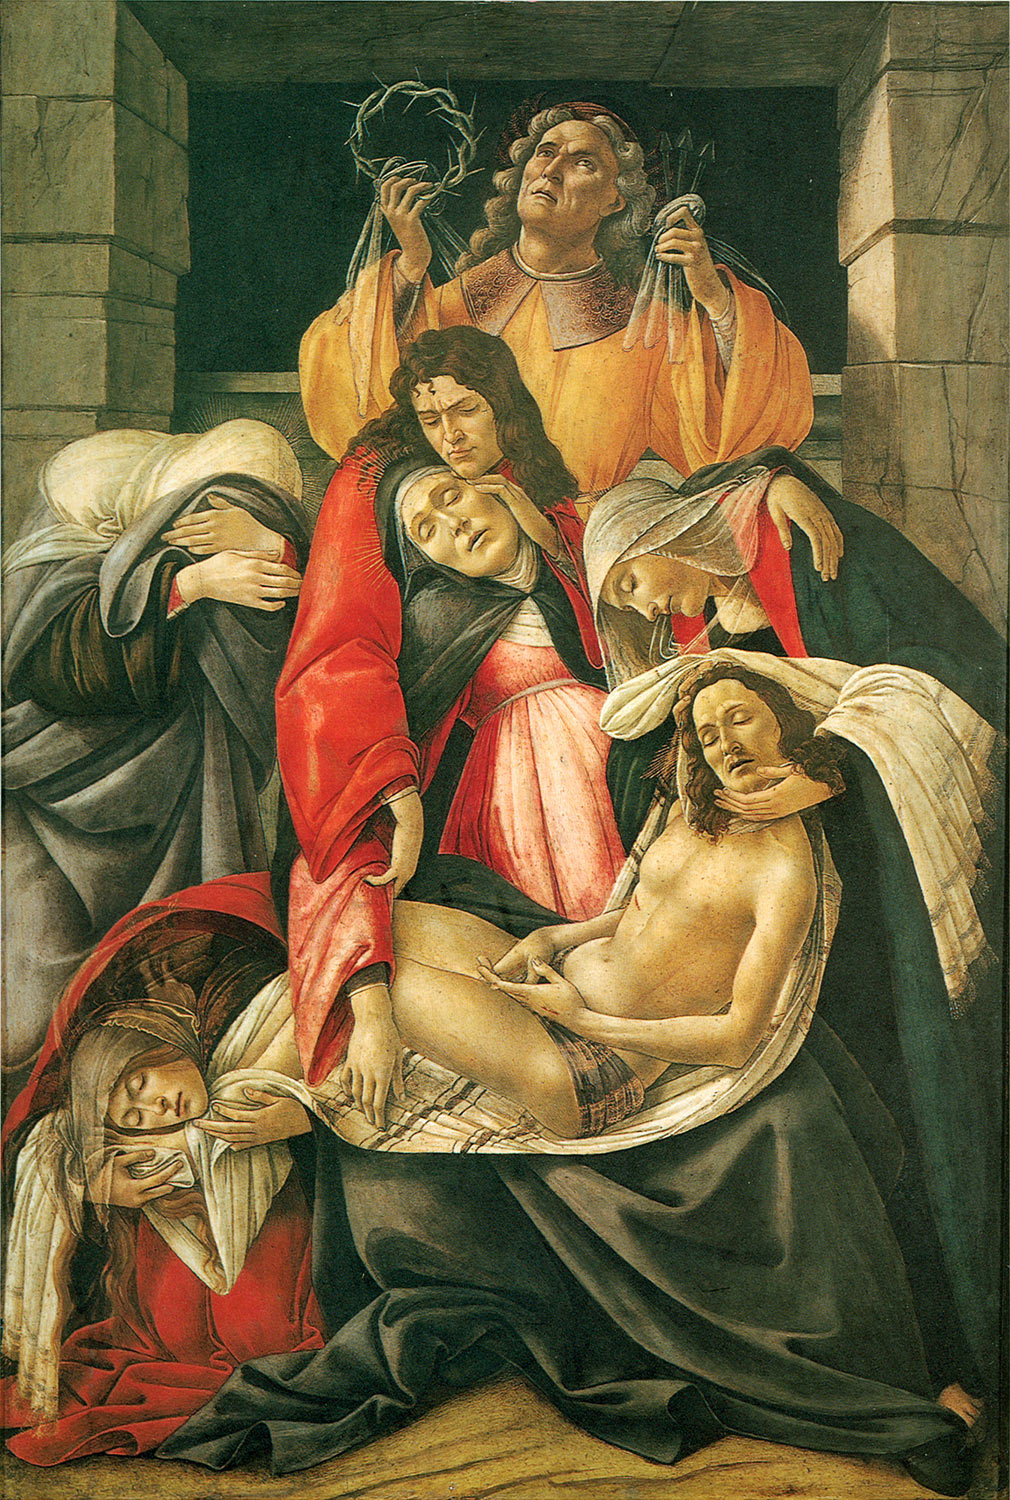 Sandro Botticelli, Compianto su Cristo morto (1495-1500 circa; tempera su tavola, 106 x 71 cm; Milano, Museo Poldi Pezzoli)
